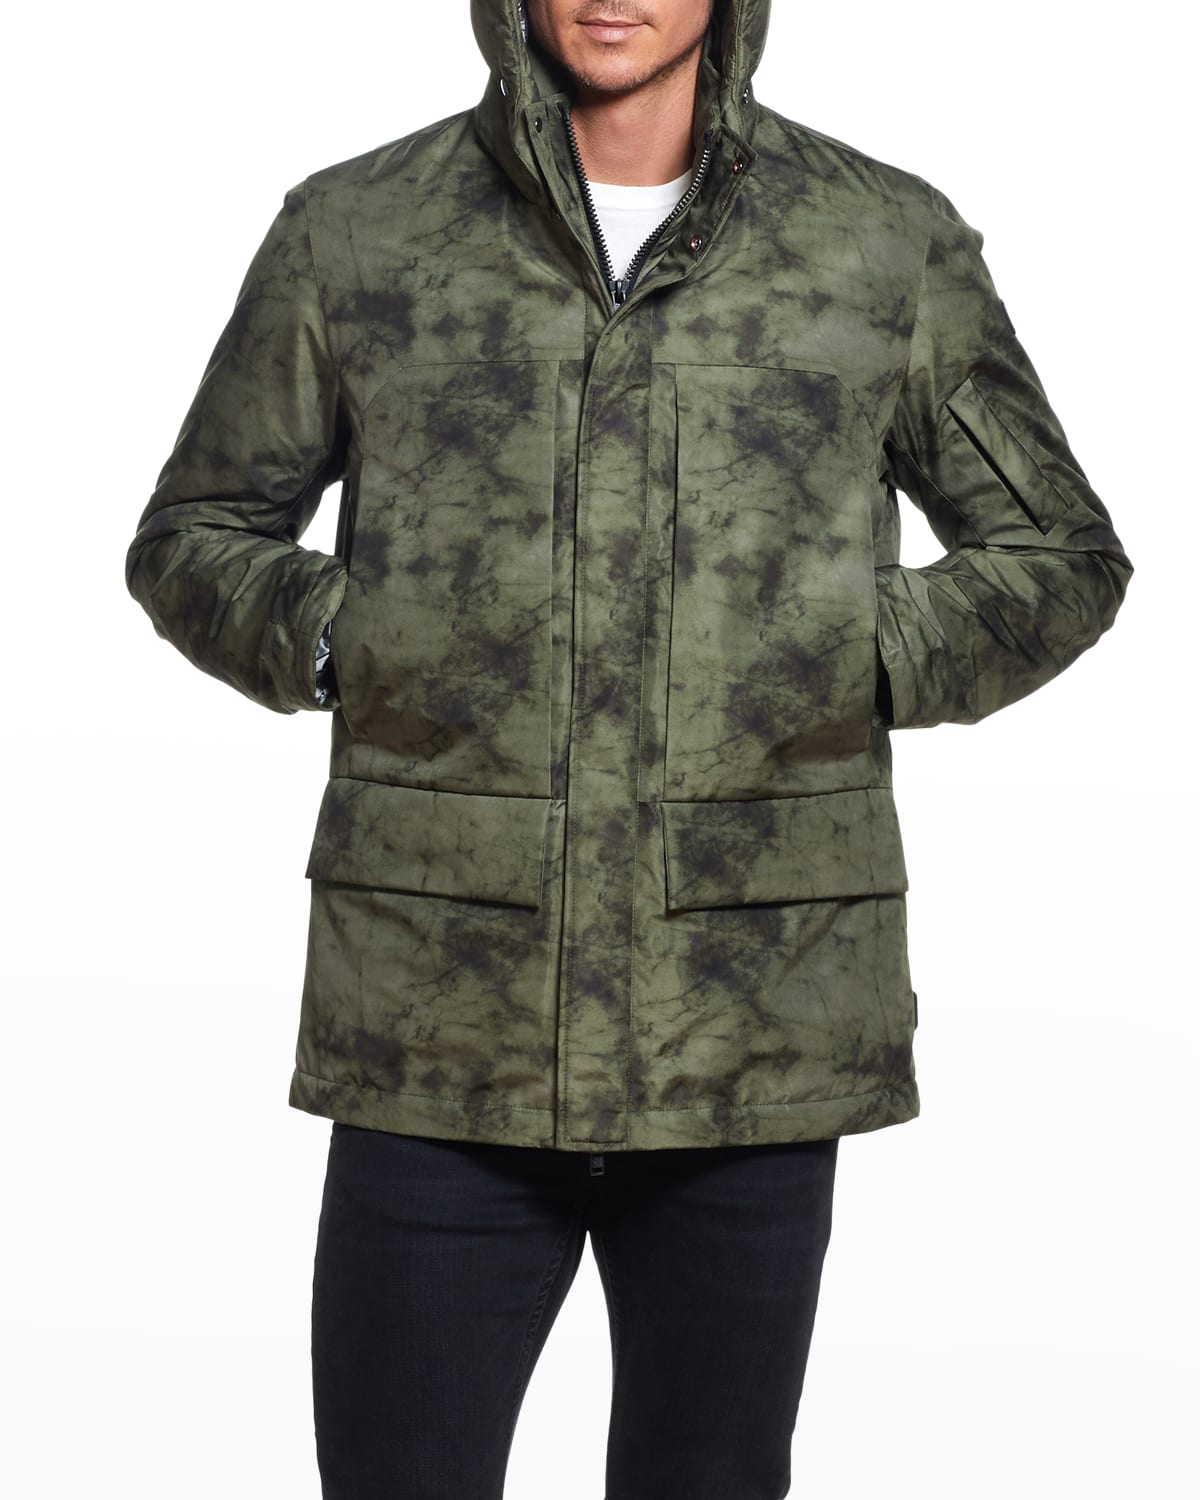 Rain Trench Coat Mens Waterproof with Hood Mens Camouflage Outdoor Coat Hooded Jacket Sports Uniform Velvet Overalls 